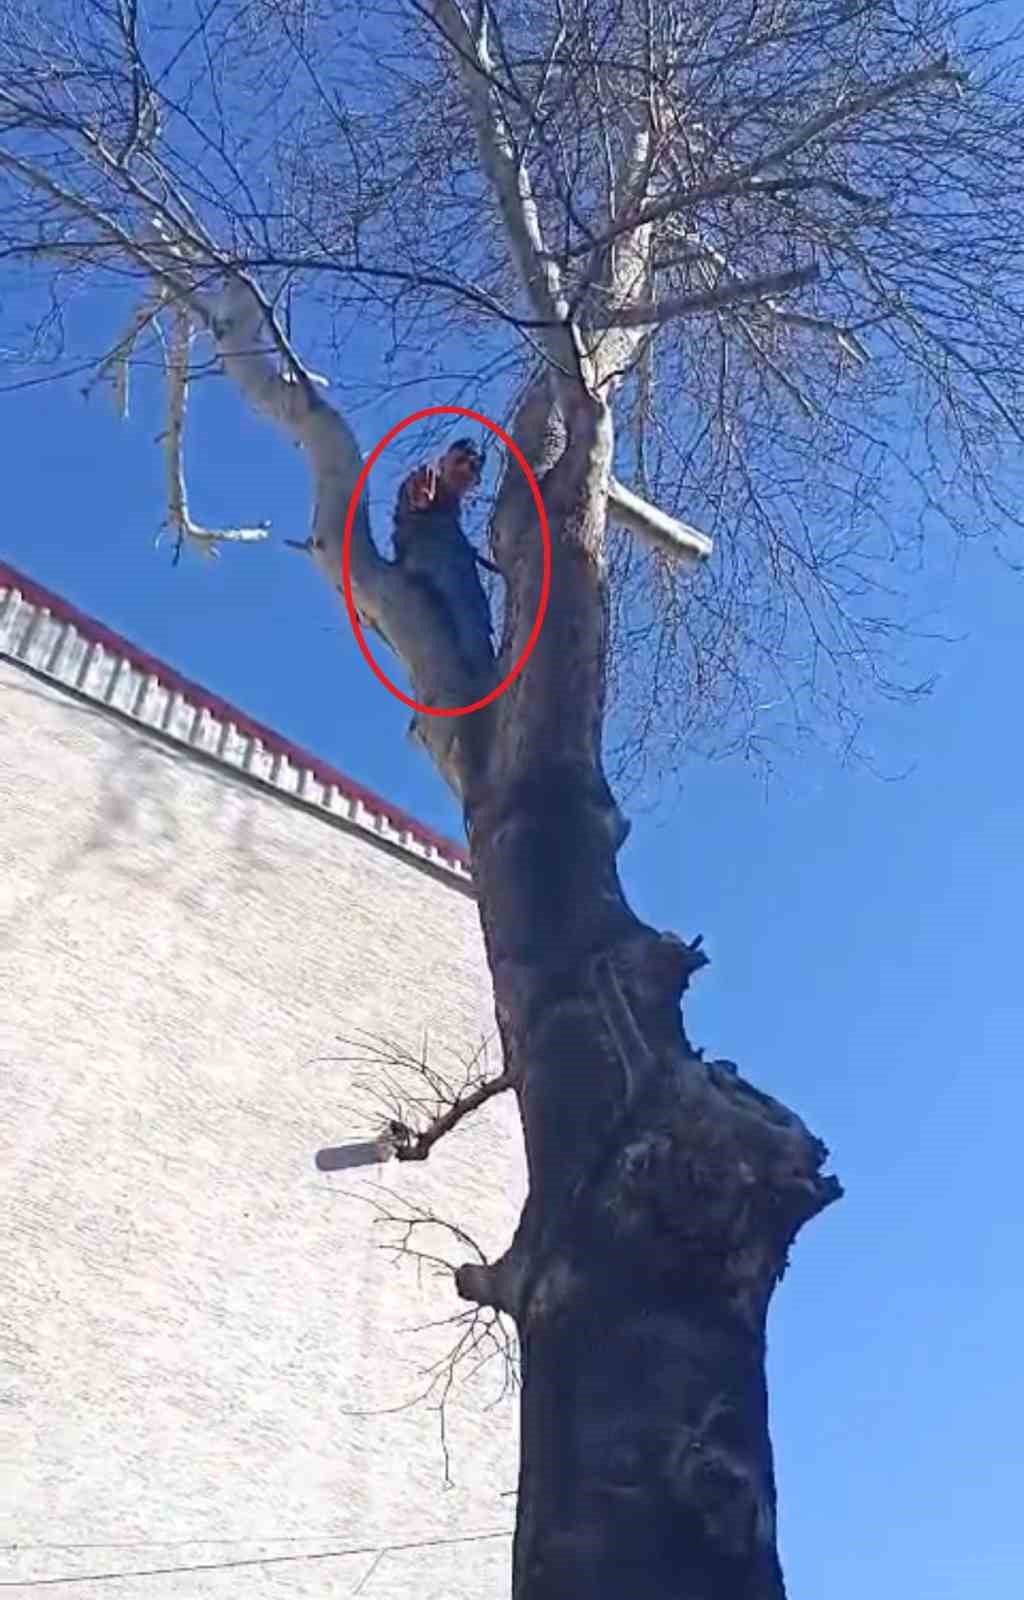 Polisi görünce kedi gibi ağaca tırmanan hırsız.. Çıktığı ağaçta polise el salladı (TIKLA&İZLE)